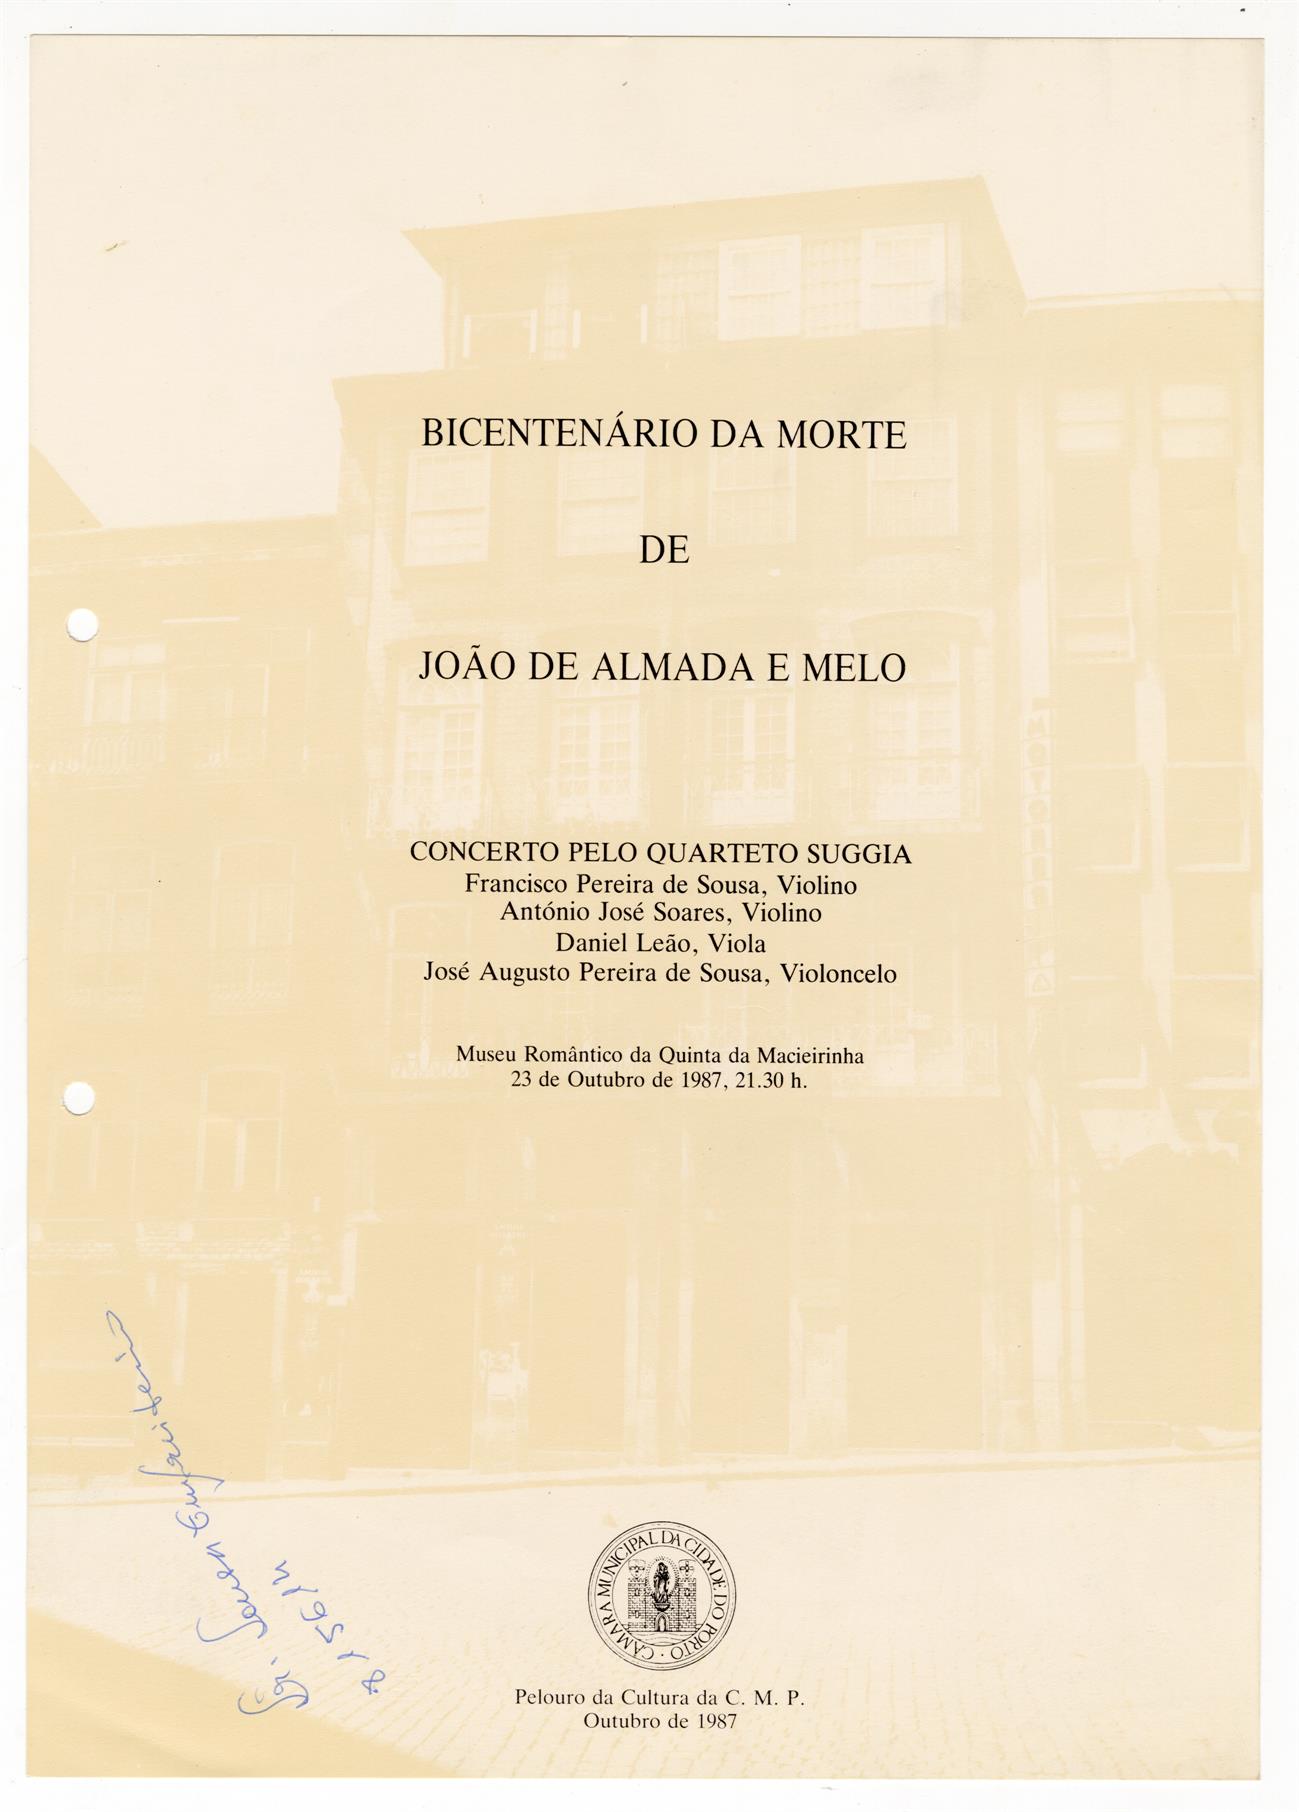 Bicentenário da morte de João de Almada e Melo: concerto pelo Quarteto Suggia